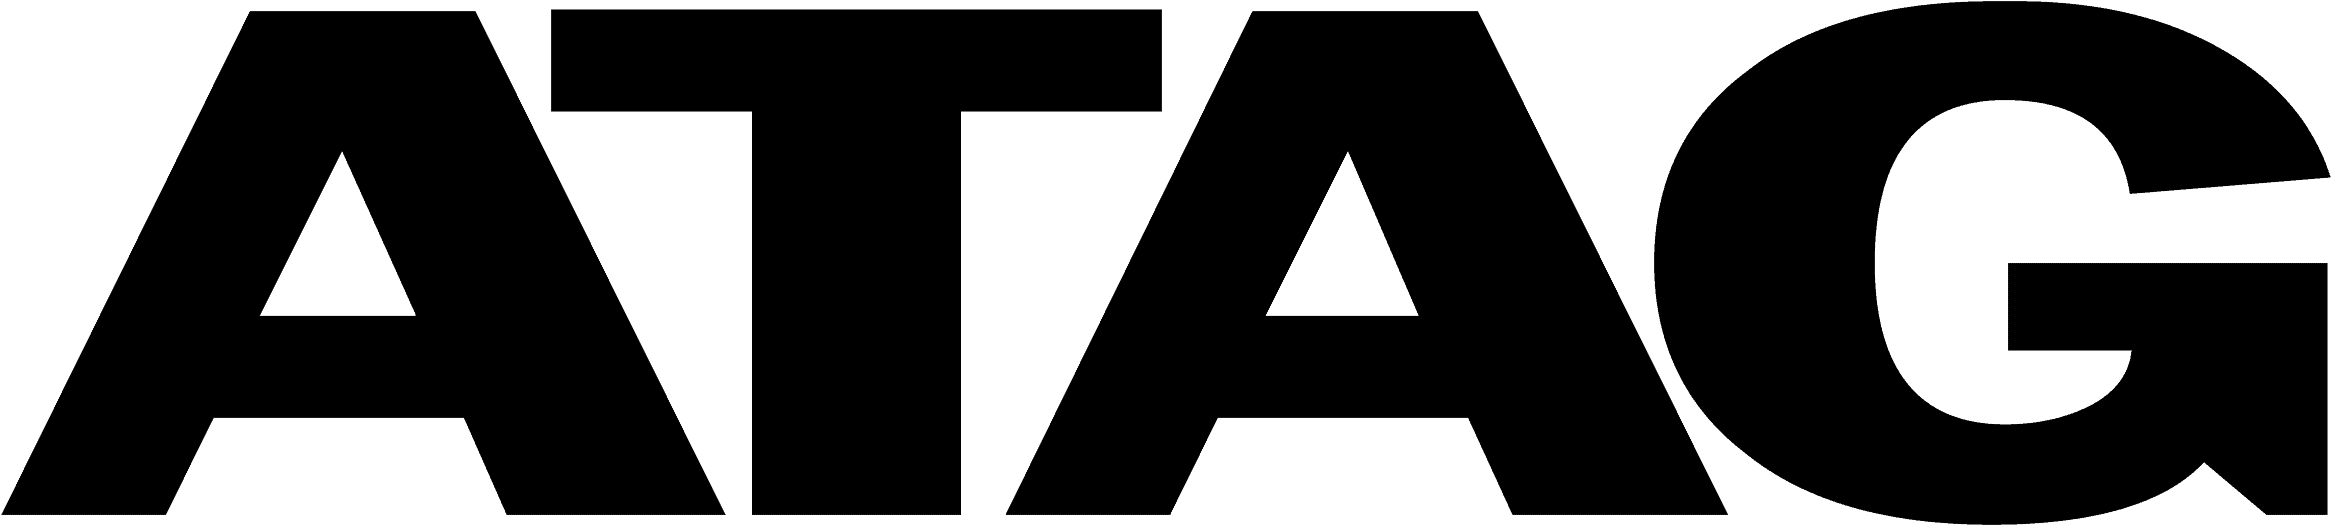 Keukenstunter - Atag-logo